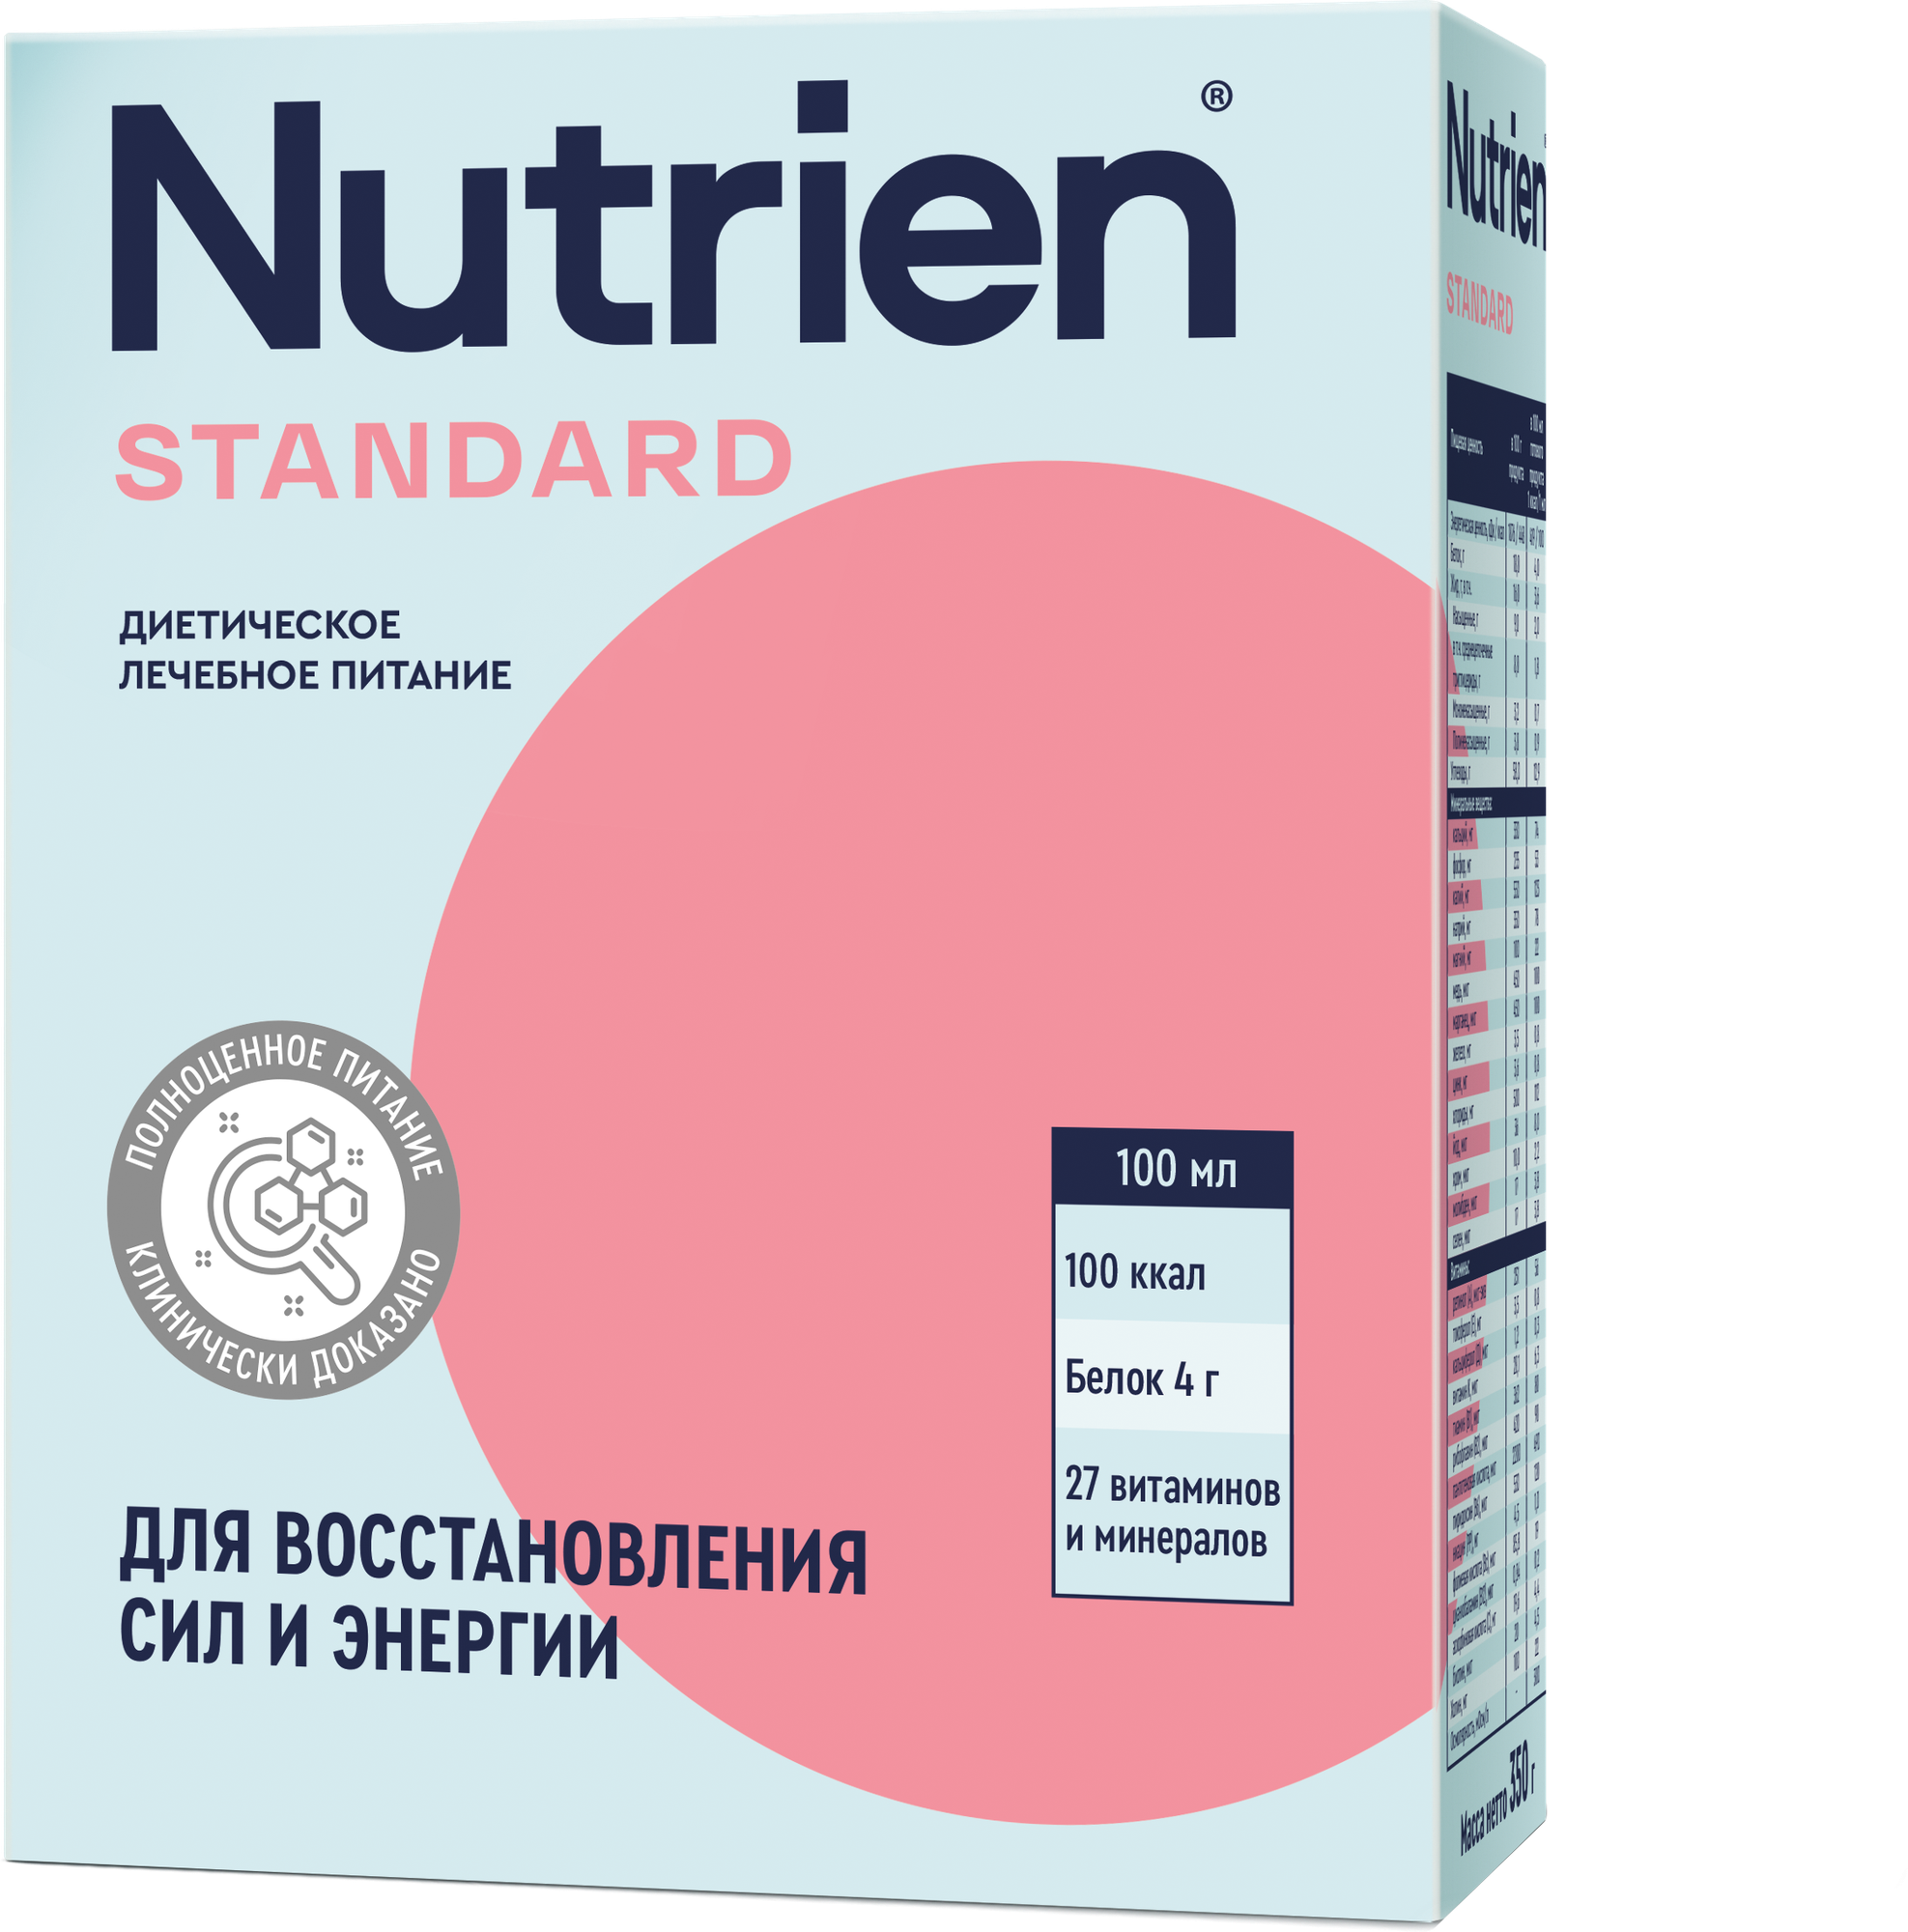 Нутриэн стандарт сухое лечебное питание нейтрал. вкус 350г